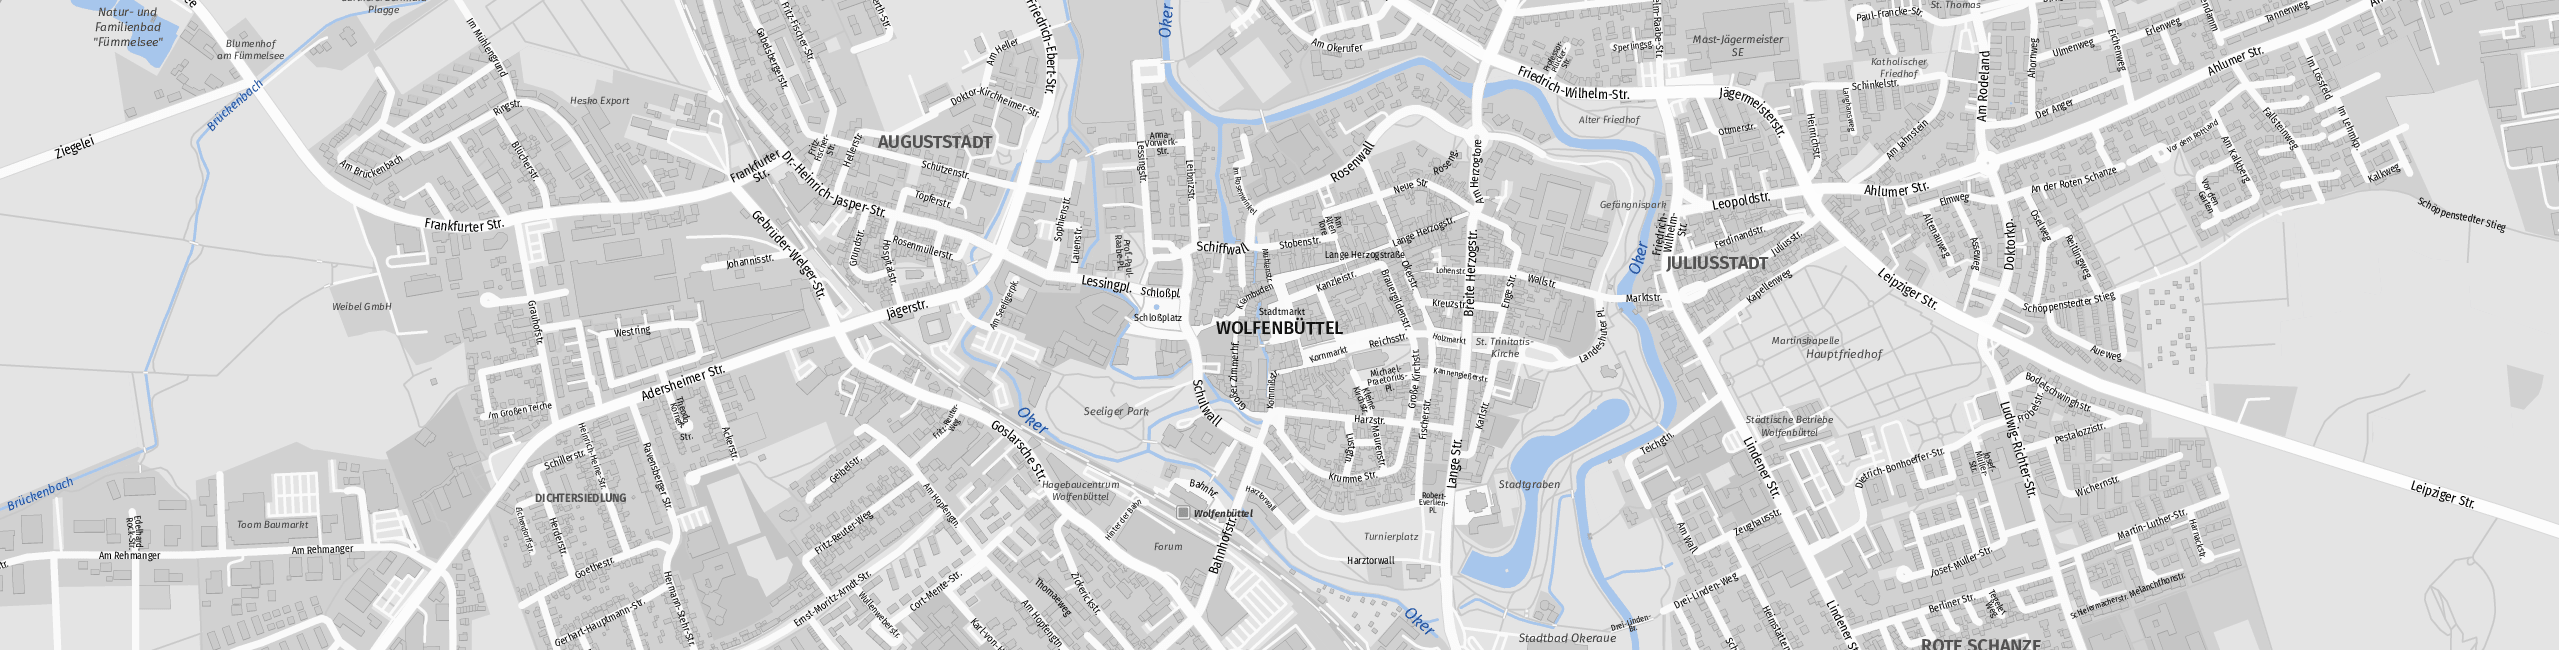 Stadtplan Wolfenbüttel zum Downloaden.